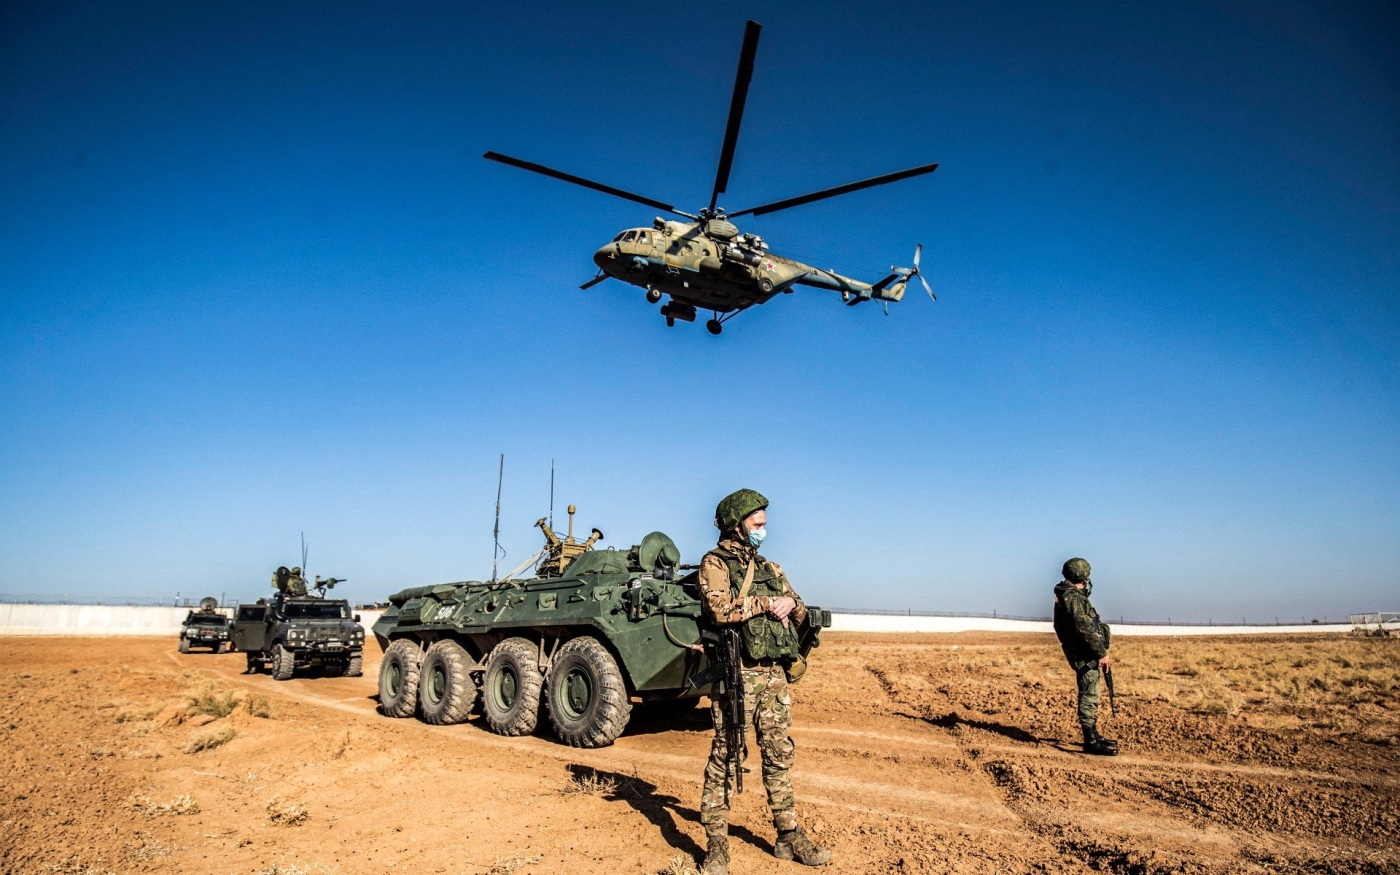 Un hélicoptère militaire russe Mil Mi-17 survole des soldats et des véhicules militaires lors d’une patrouille conjointe russo-turque en Syrie (AFP)